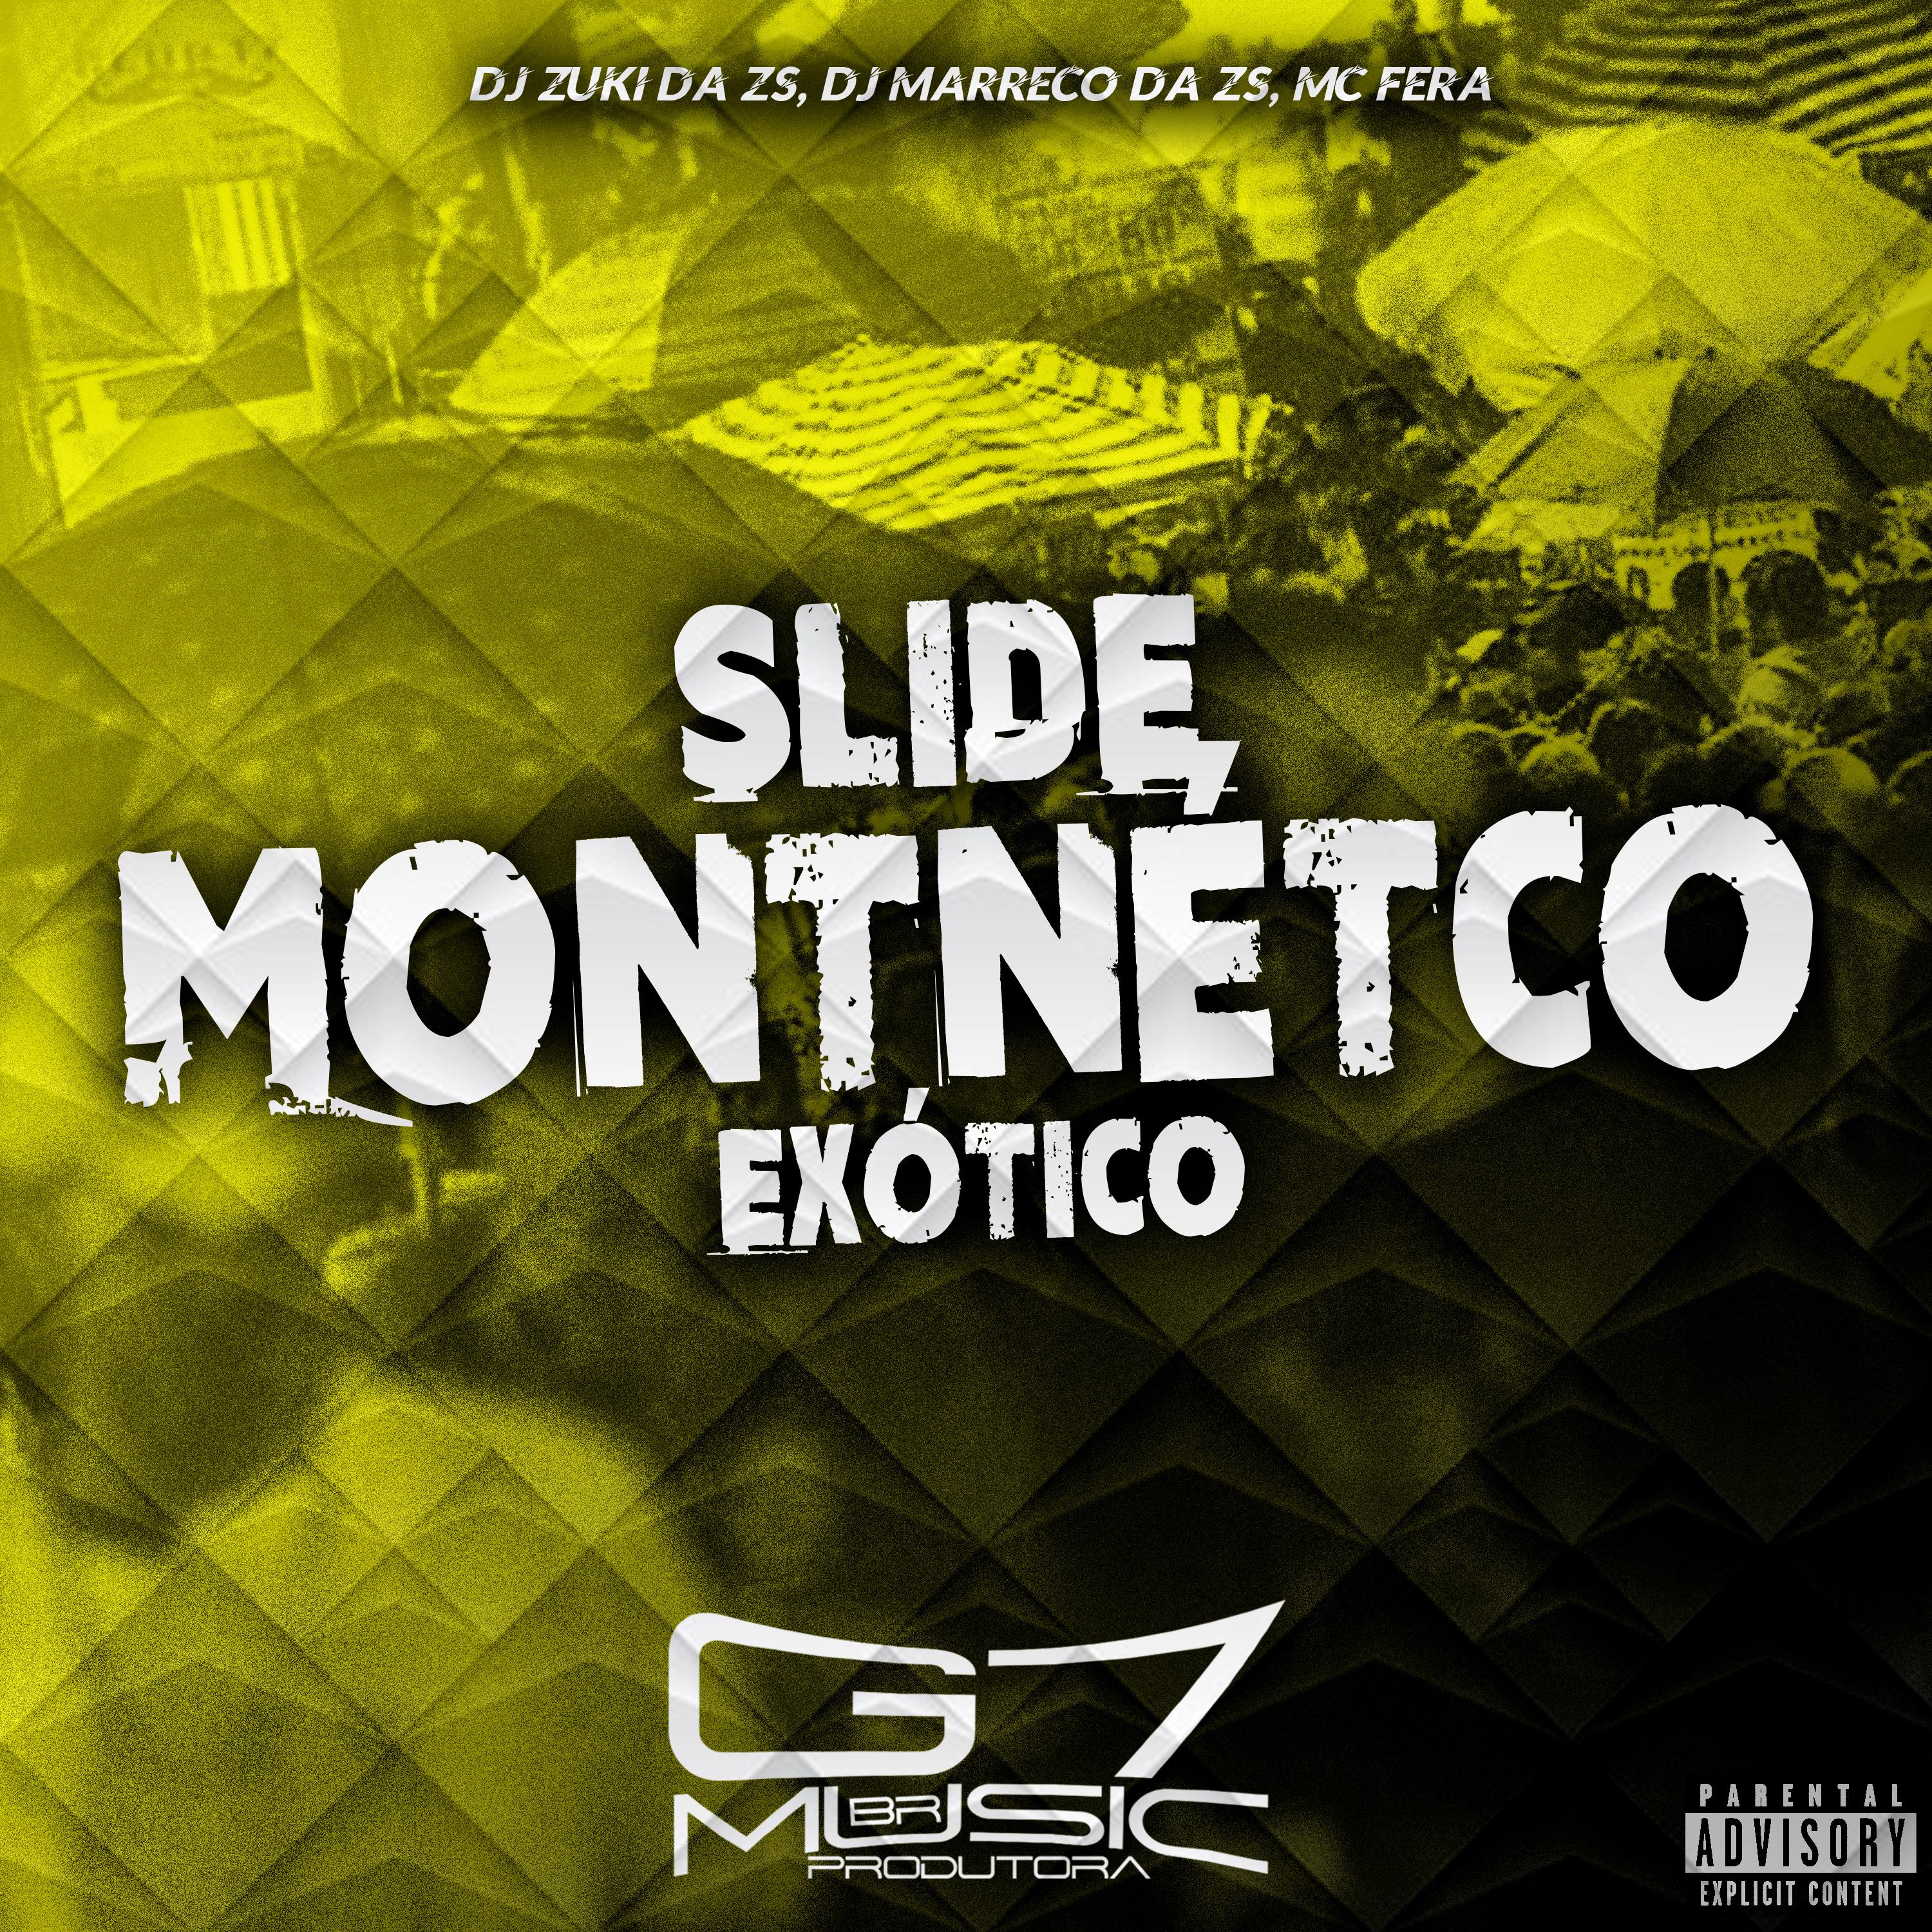 Постер альбома Slide Montnétco Exótico